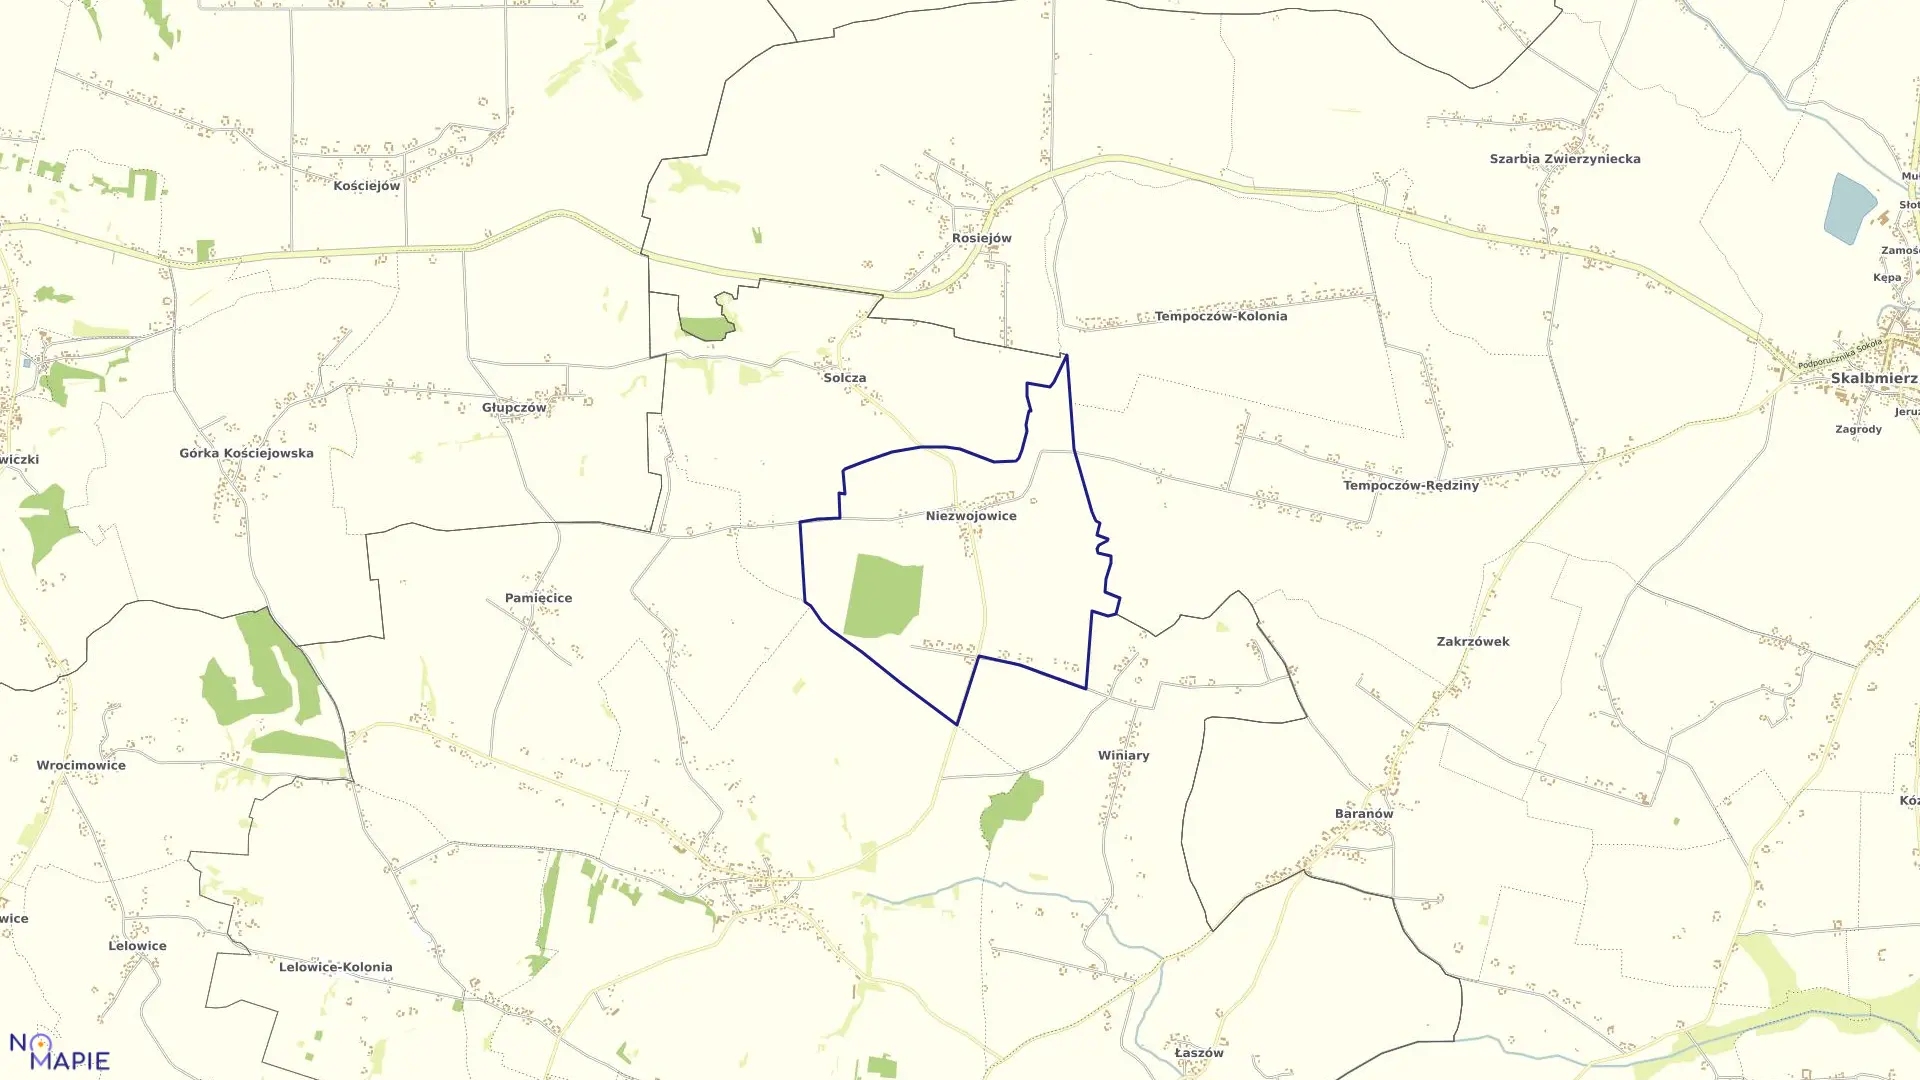 Mapa obrębu Niezwojowice w gminie Pałecznica